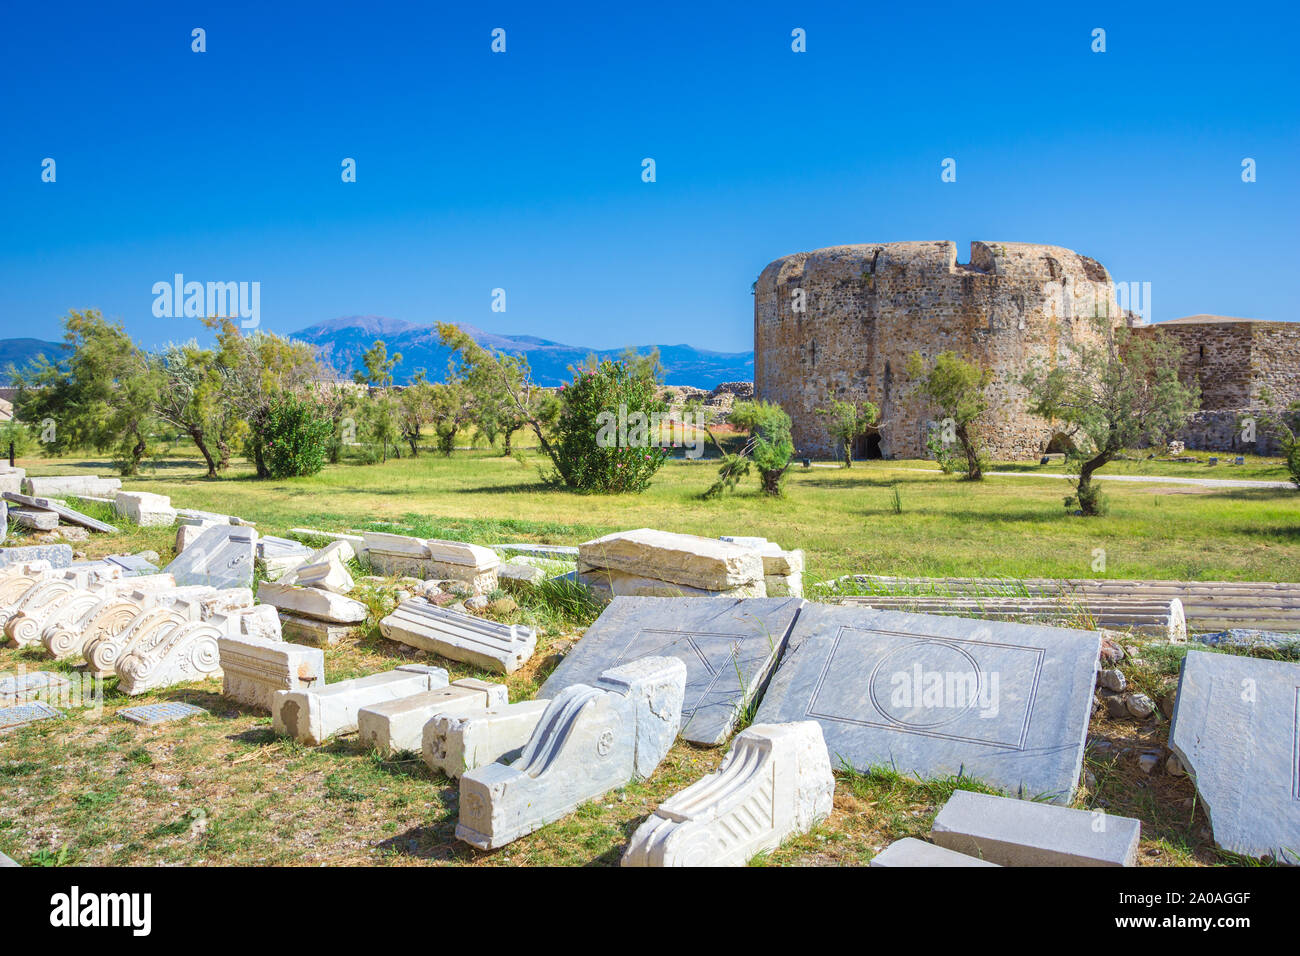 Scenic view of Venecian fortress Rio castle in Greece, near Rio-Antirio Bridge crossing Corinth Gulf strait, Peloponnese, Greece Stock Photo